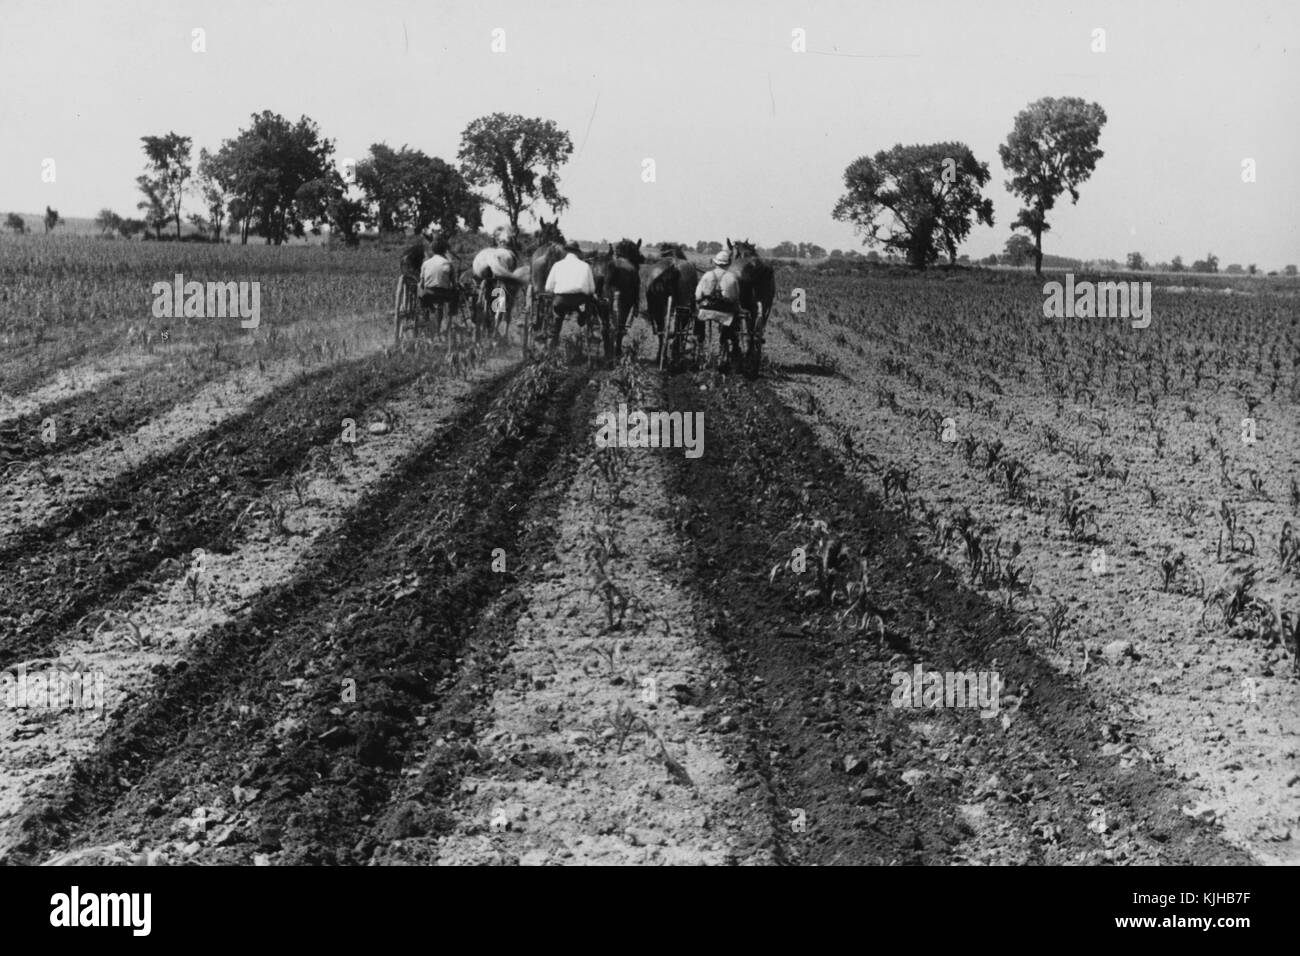 Ein Foto von drei Bauern, jeder Landwirt in Betrieb ist, Ihre eigenen Zwei- zeile Kultivator, um den Boden Mais wachsen vorzubereiten, die Landwirte jeweils durch ein Team von zwei Pferden gezogen, Bäume am Rand des Feldes stand sie Arbeiten, flaches Land und Felder auch weiterhin bei der Entfernung, Ohio, 1938. Von der New York Public Library. Stockfoto